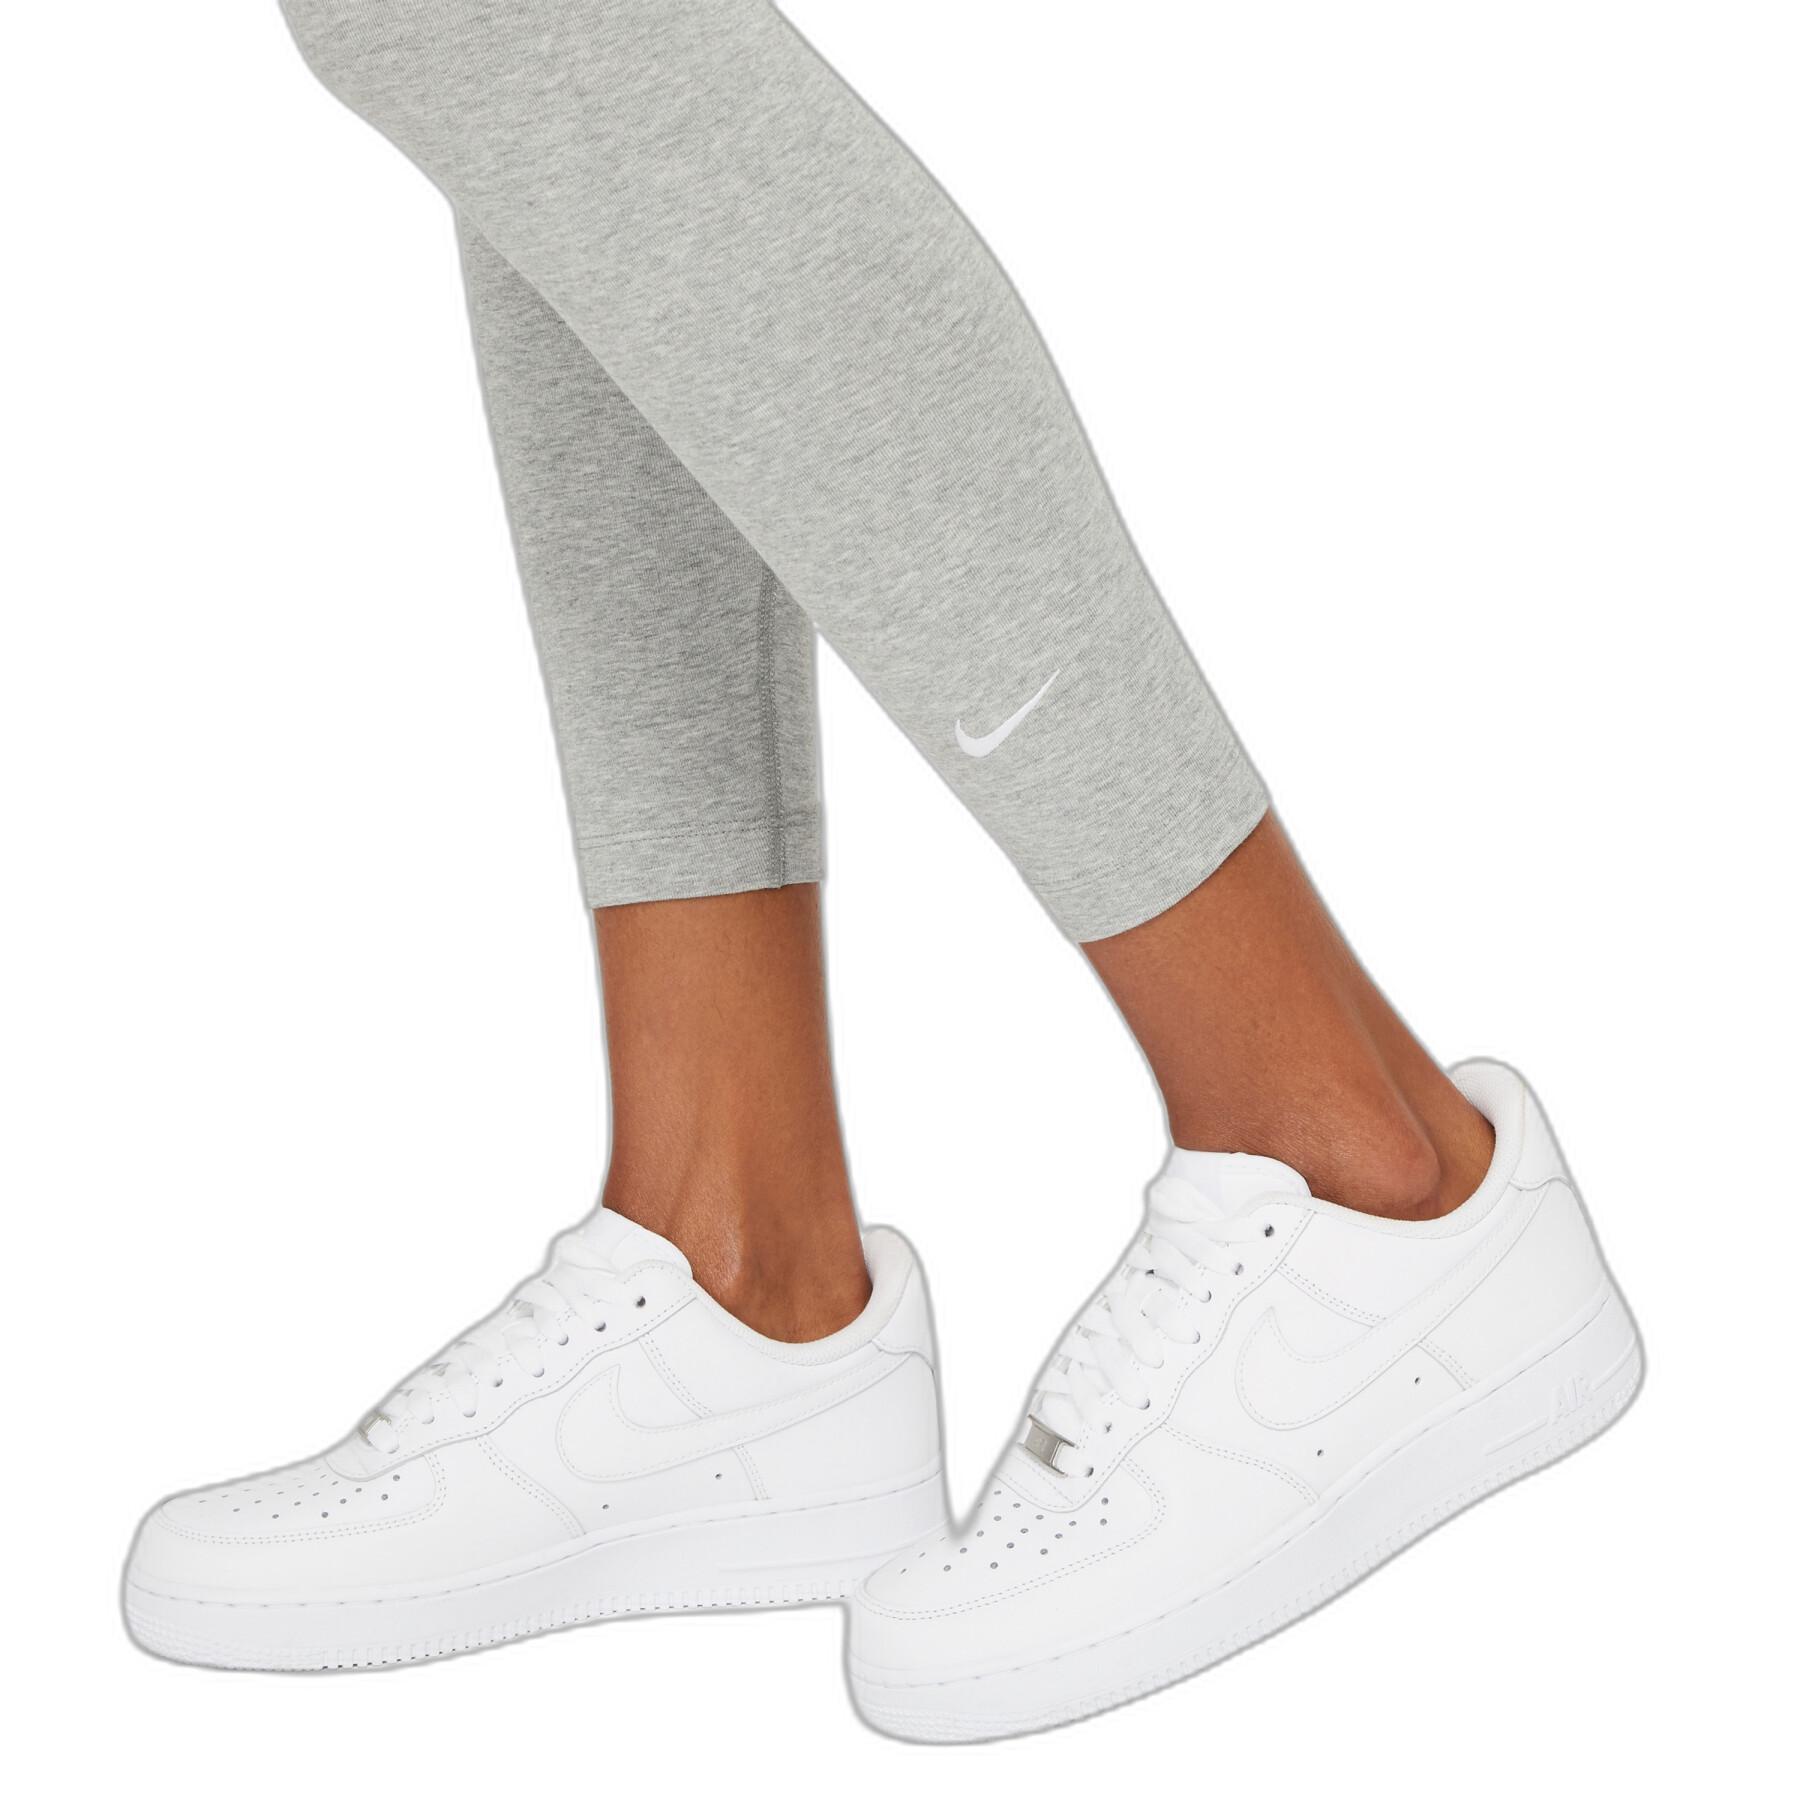 Leggings Damen Nike Sportswear Essential